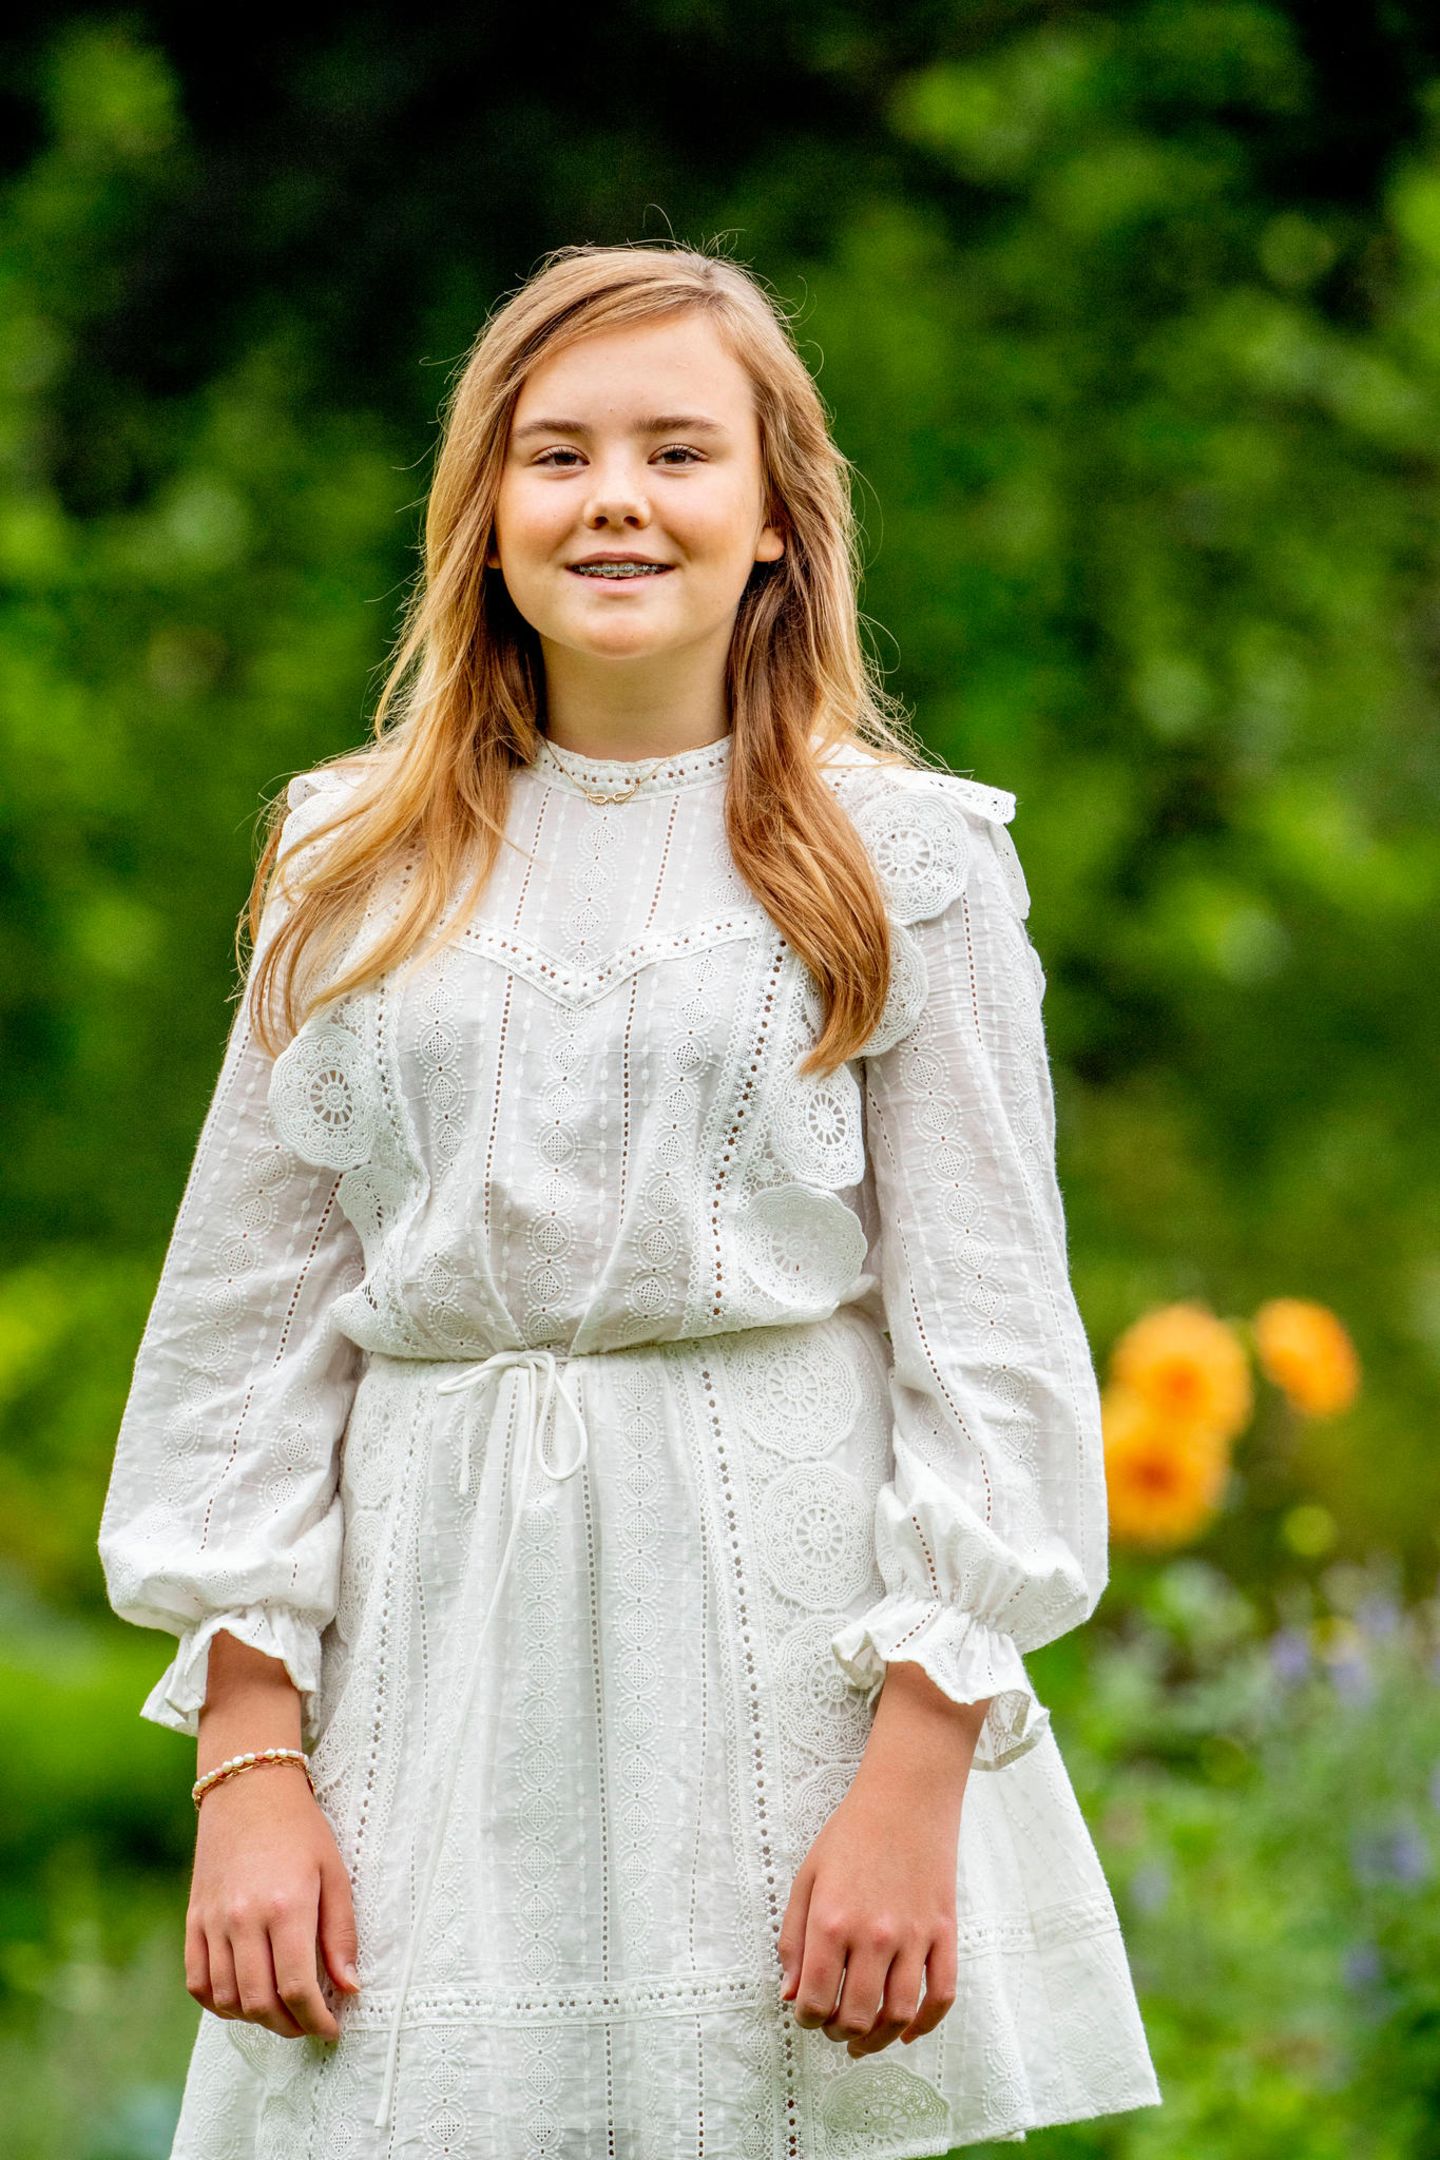 Prinzessin Ariane ist mit 13 Jahren die jüngste Töchter von Máxima und Willem-Alexander. Hier strahlt sie in einem weißen Kleid mit der Sonne um die Wette.